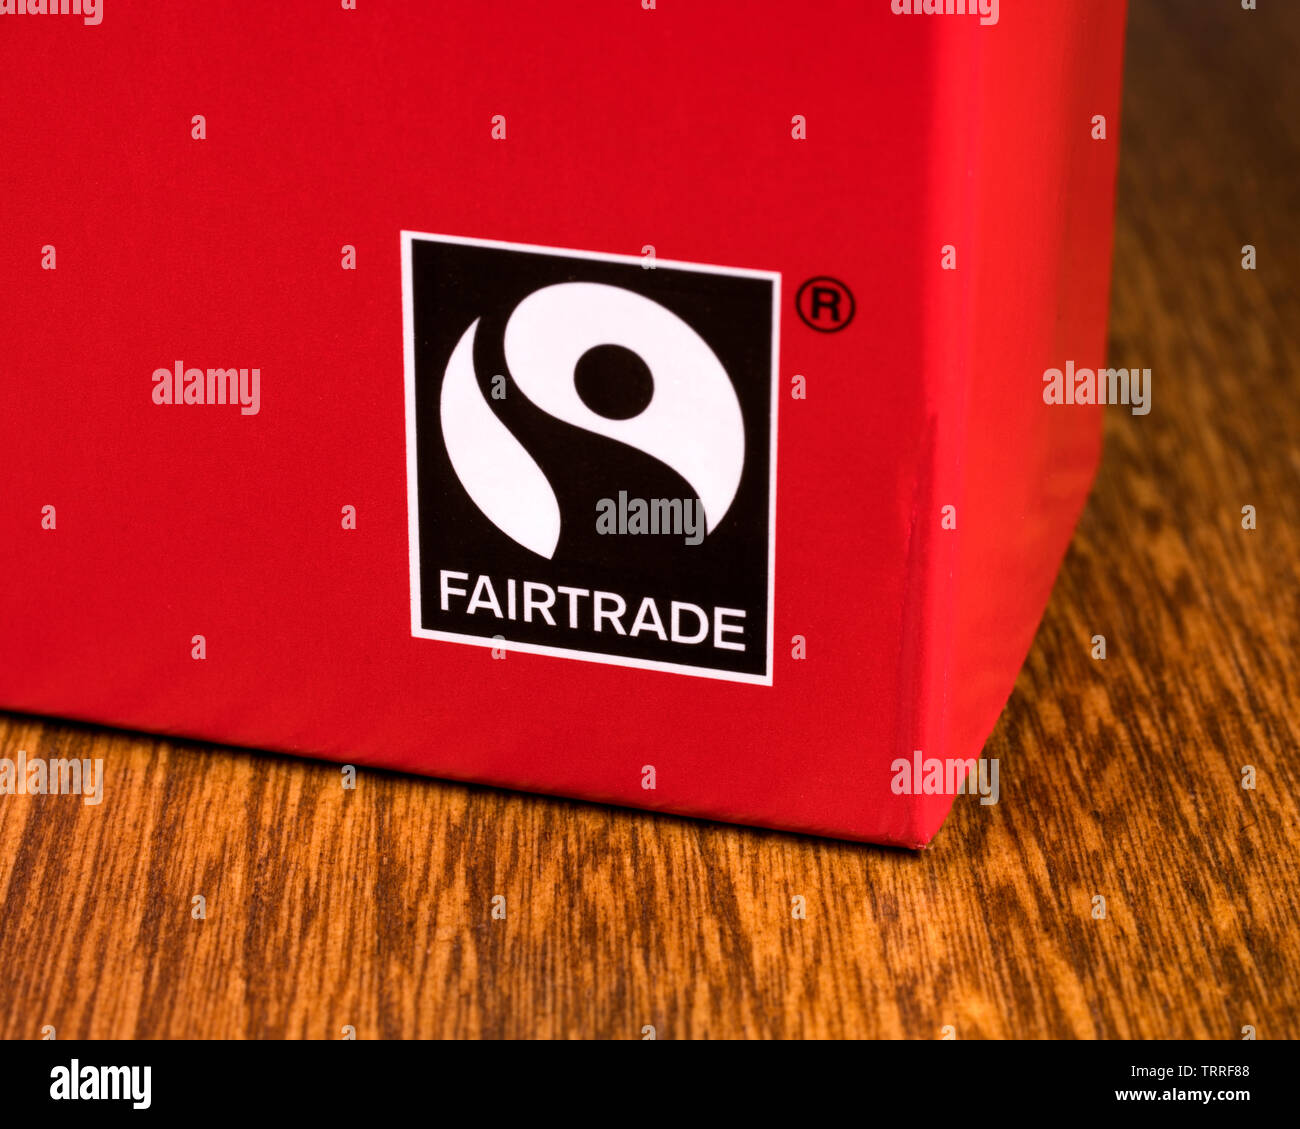 London, Regno Unito - 11 Giugno 2019: un close-up della certificazione Fairtrade simbolo sulla confezione di un prodotto alimentare. Foto Stock